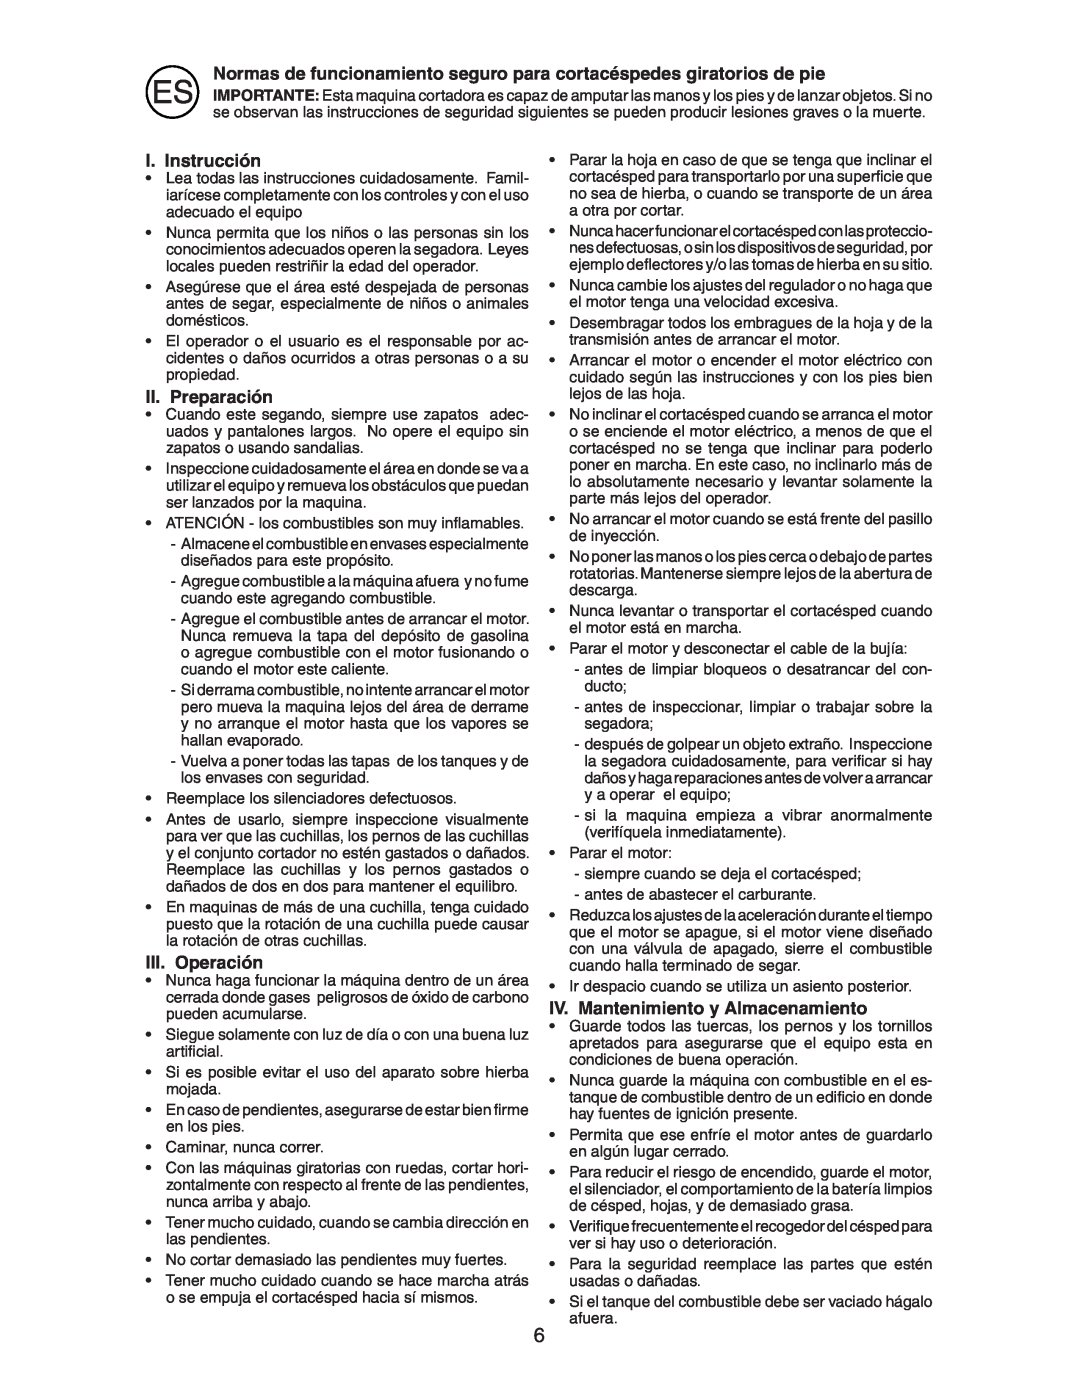 McCulloch M6553D instruction manual I. Instrucción, II. Preparación, III. Operación, IV. Mantenimiento y Almacenamiento 